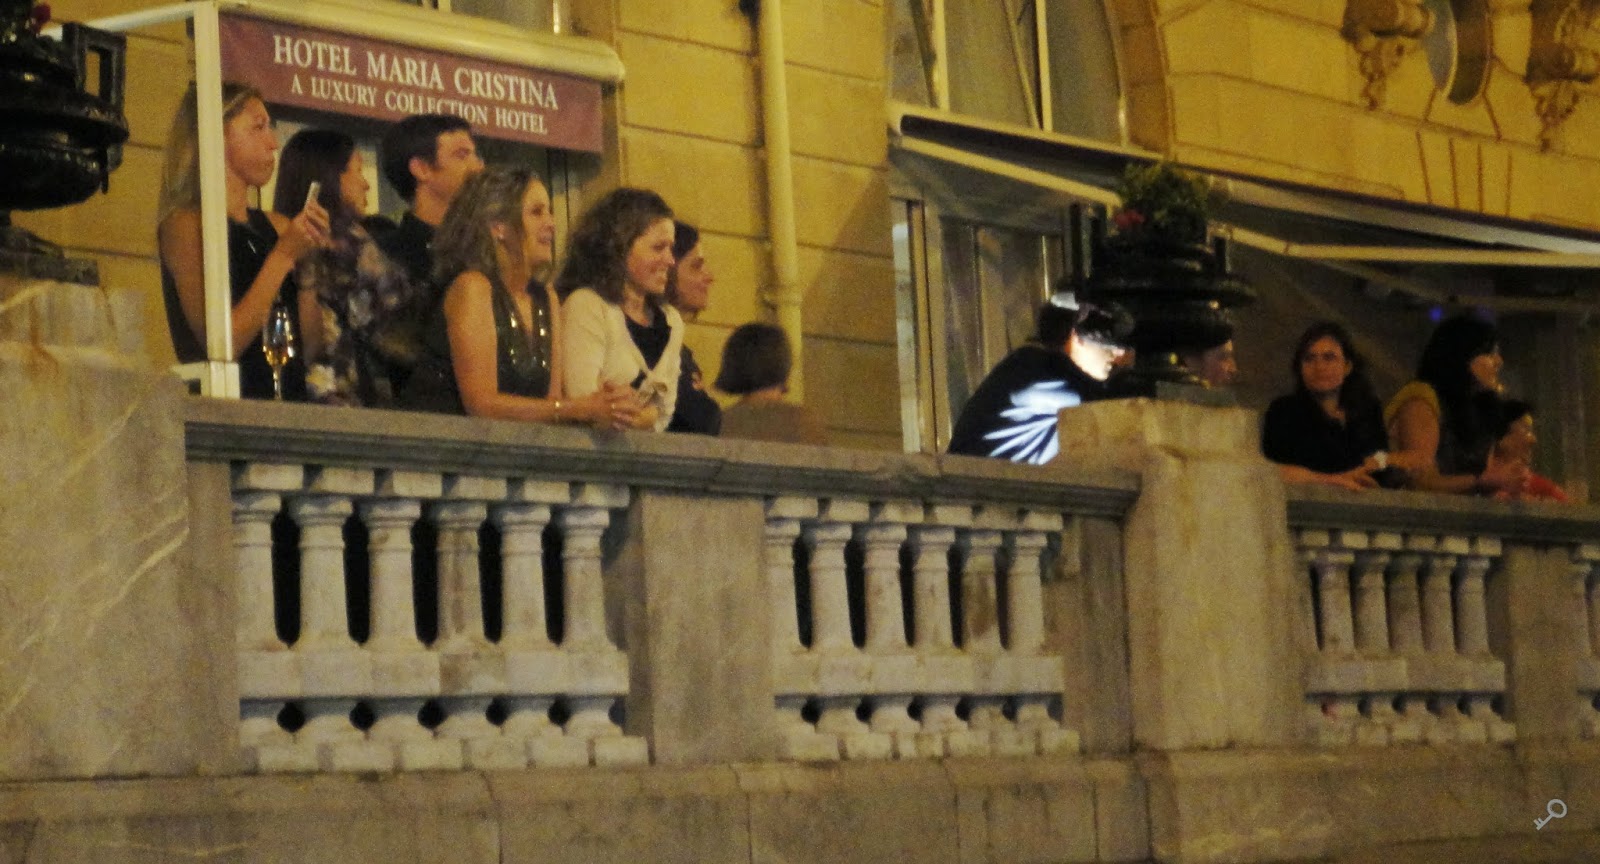 Balcones del hotel María Cristina, esperando a Orlando Bloom